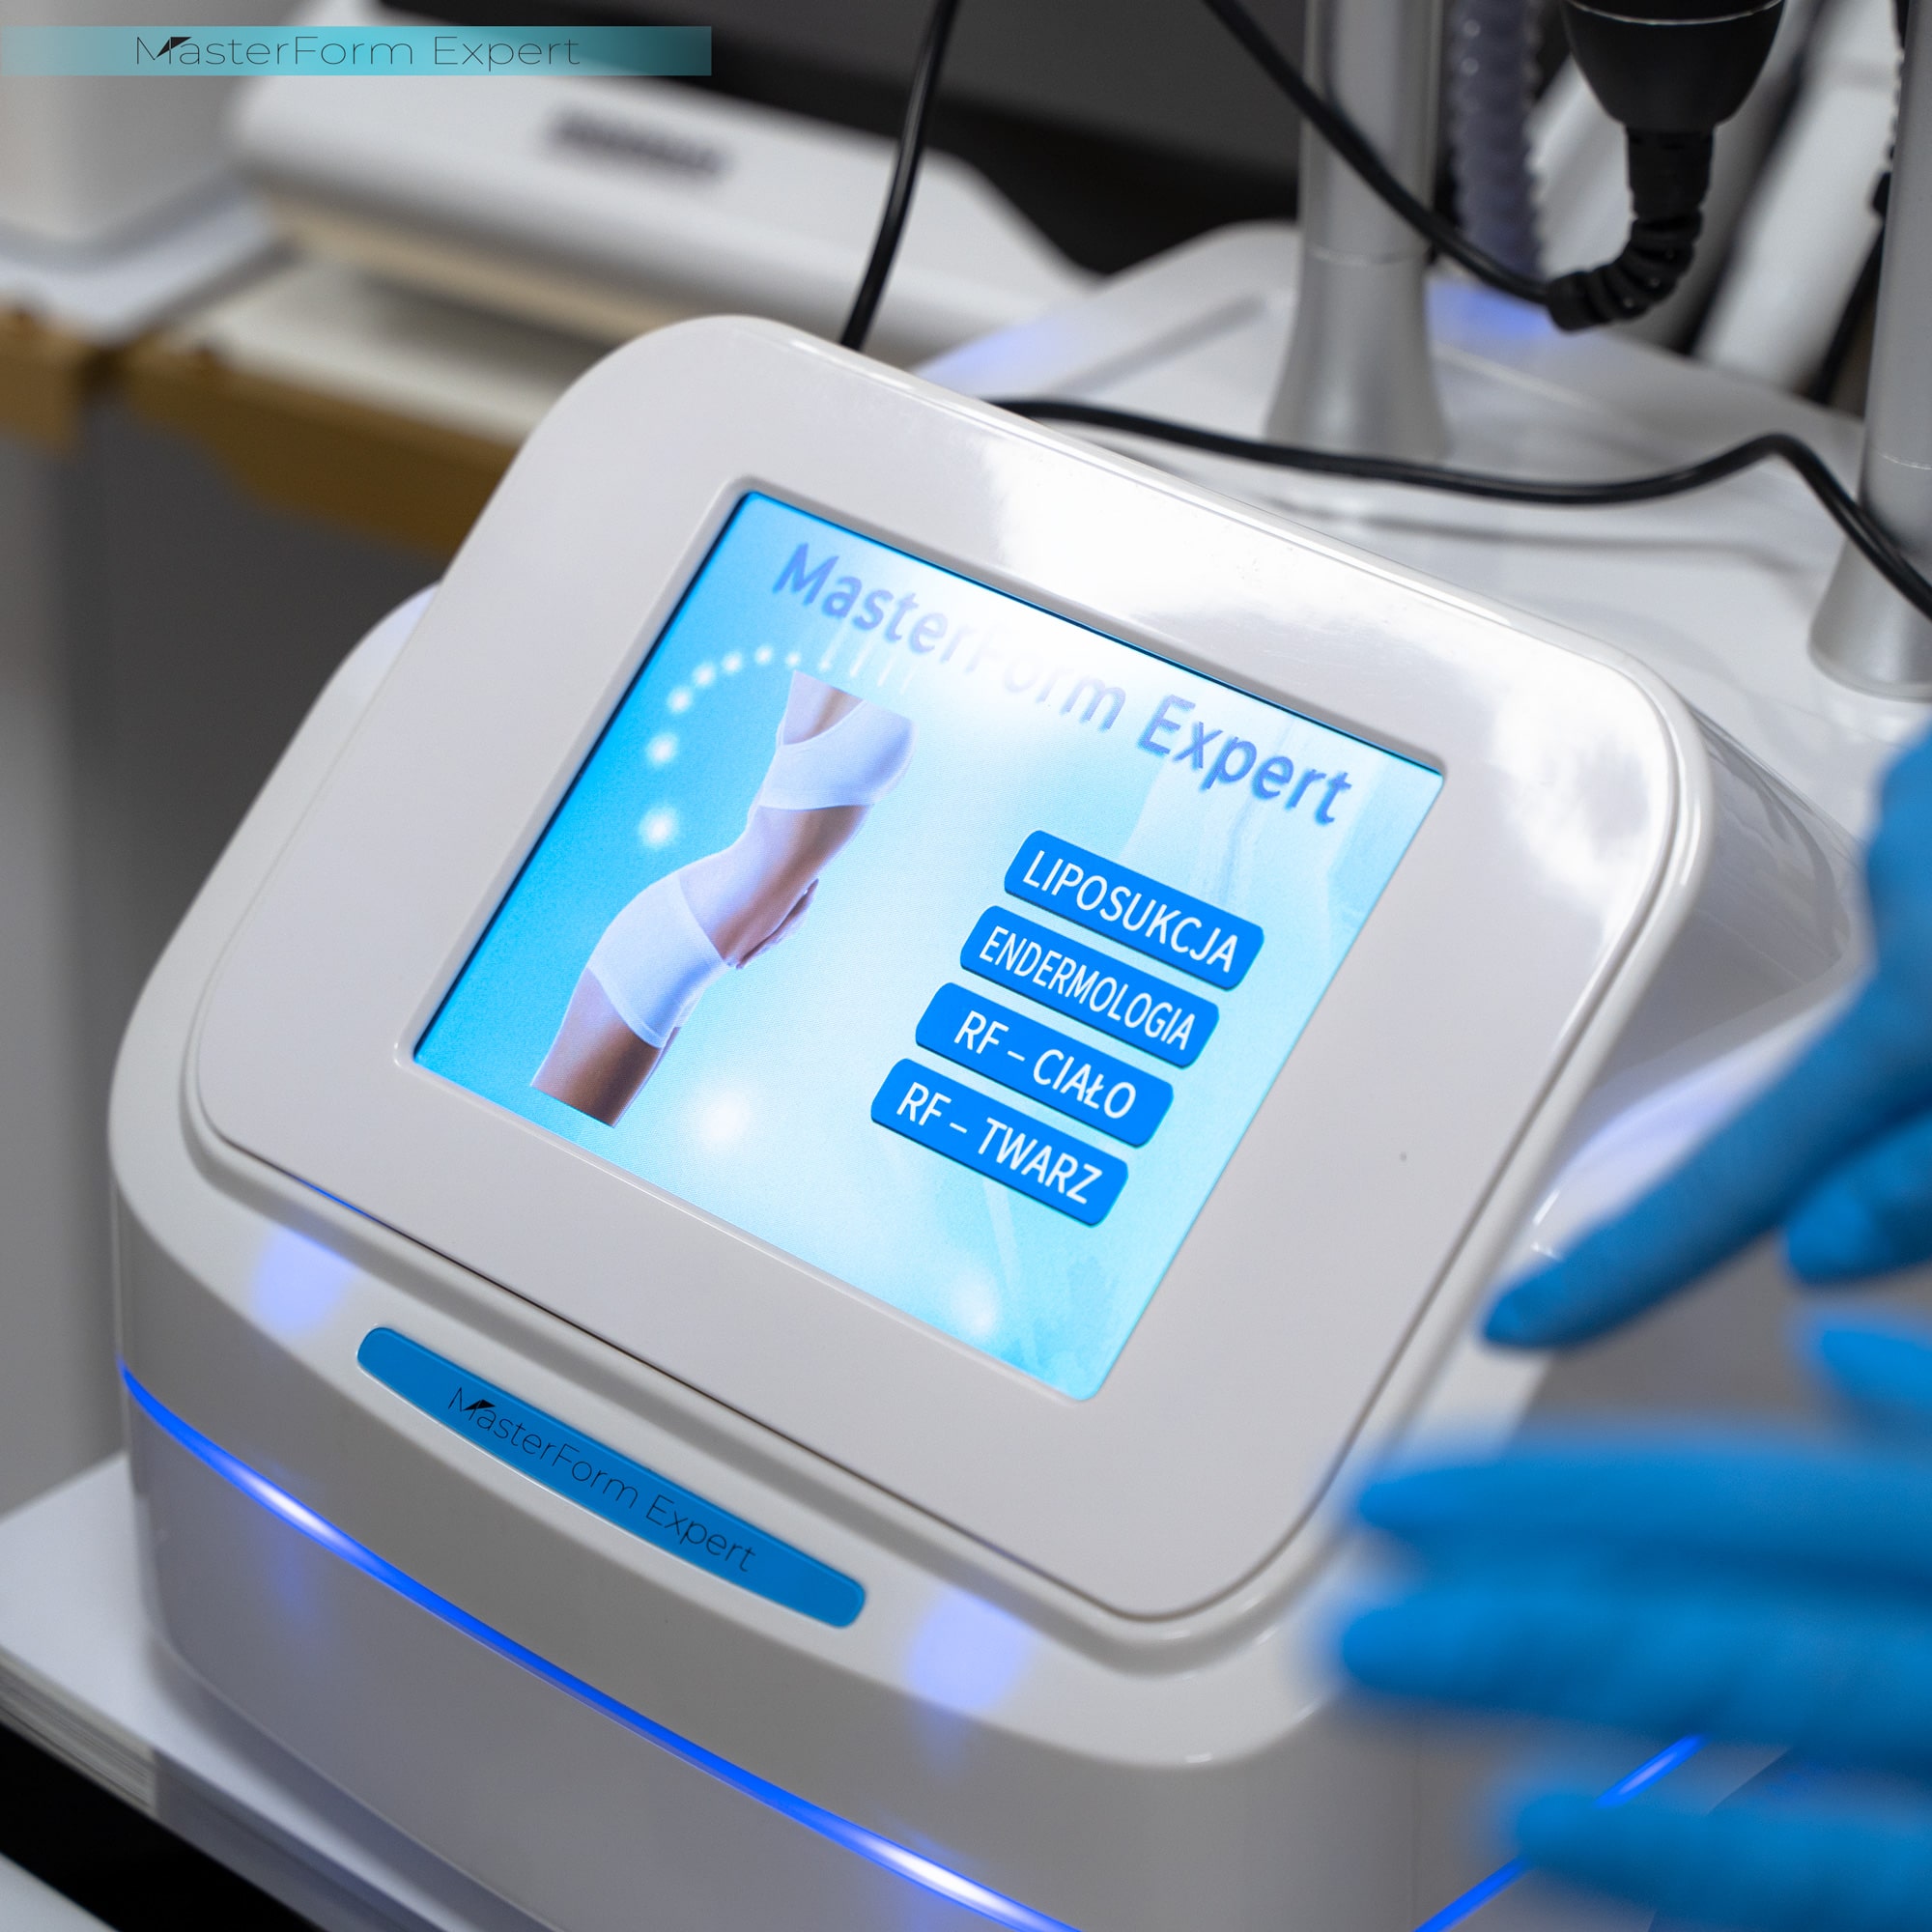 Na ekranie maszyny MasterForm Expert widać 4 dostępne programy zabiegowe - liposukcja, endermologia, RF na ciało lub twarz